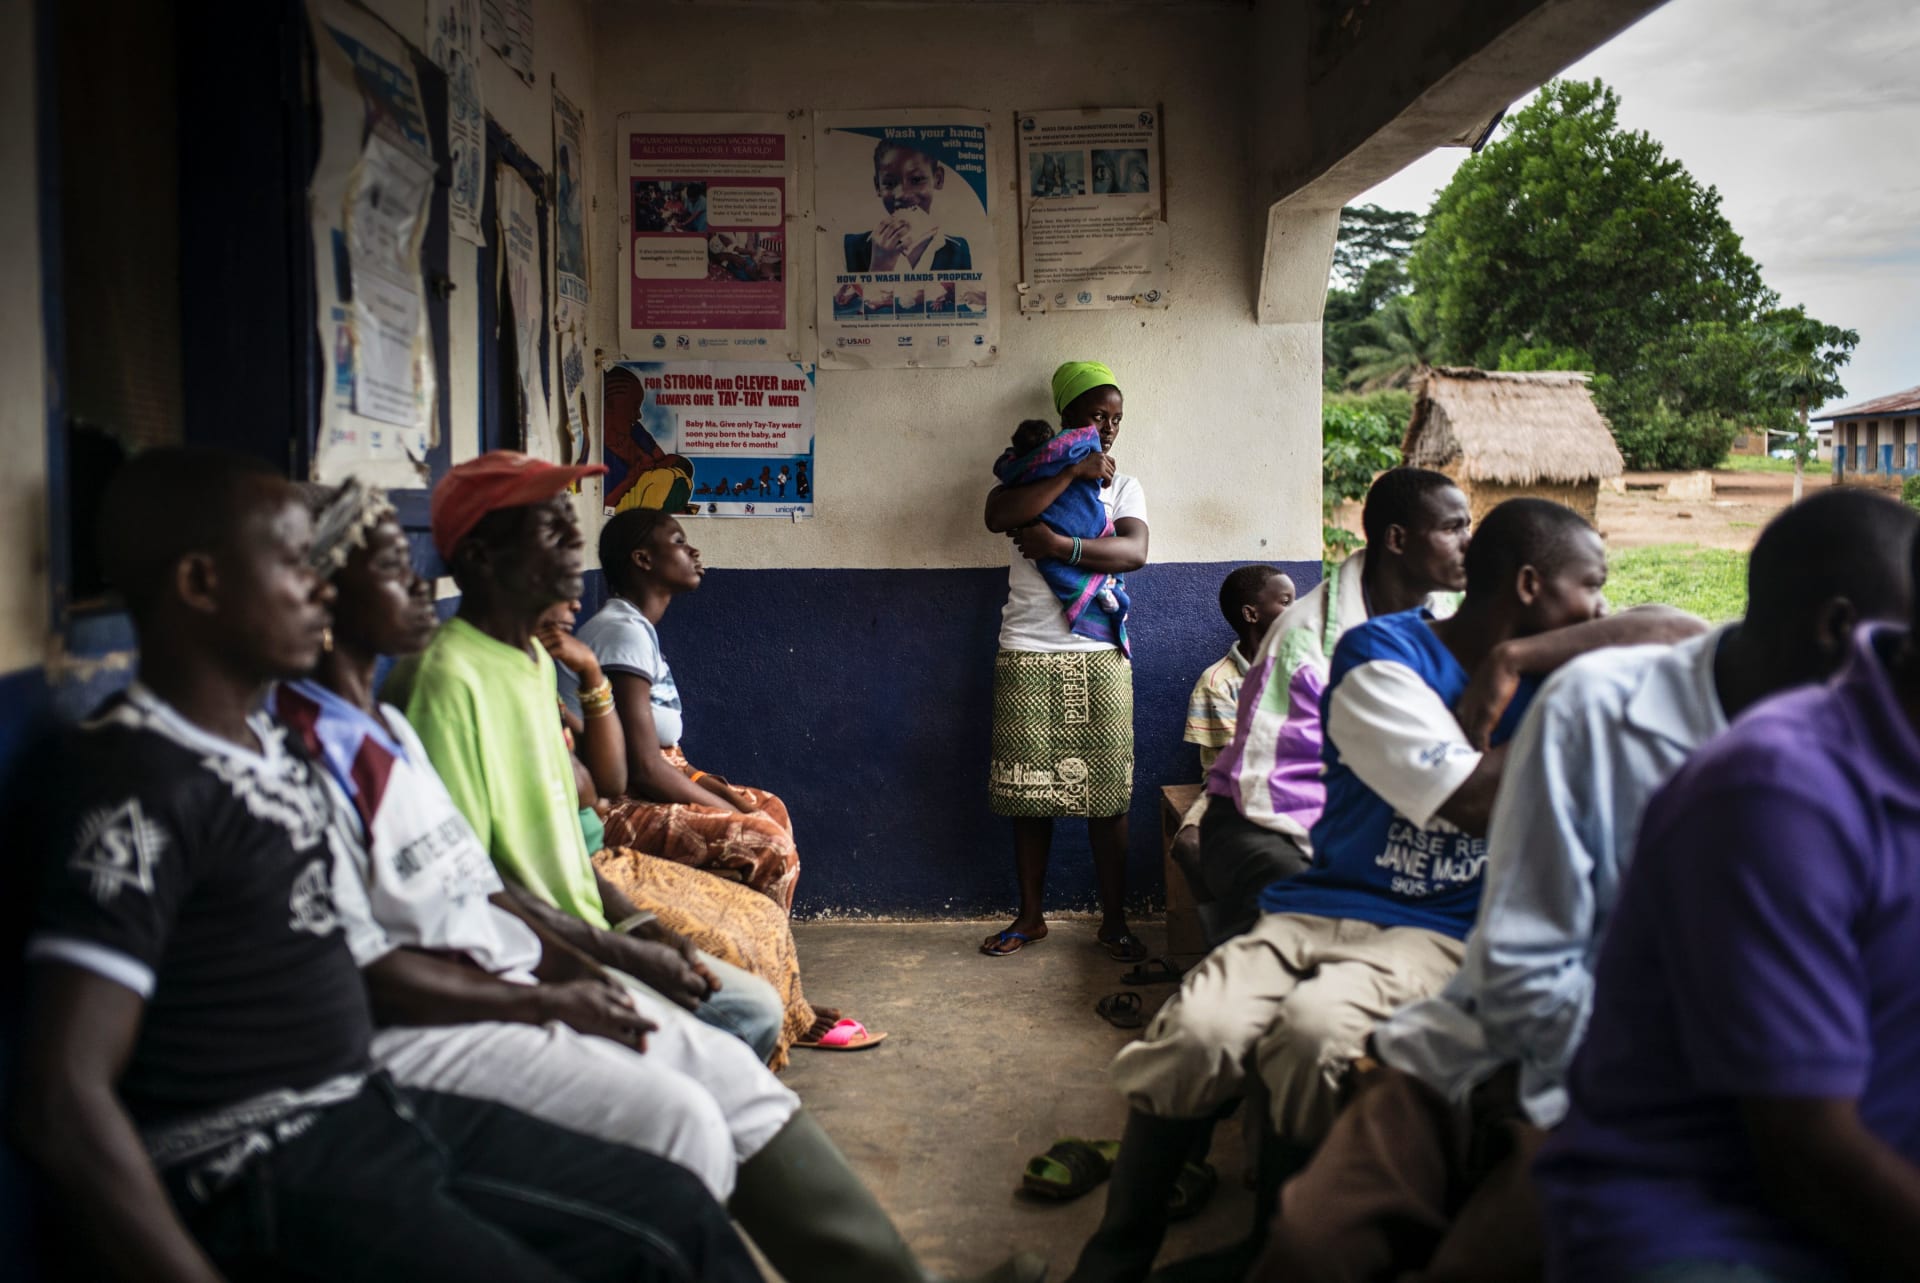 غينيا تعلن تفشي فيروس إيبولا في منطقة واحدة.. والكونغو ترصد المزيد من حالات الوباء